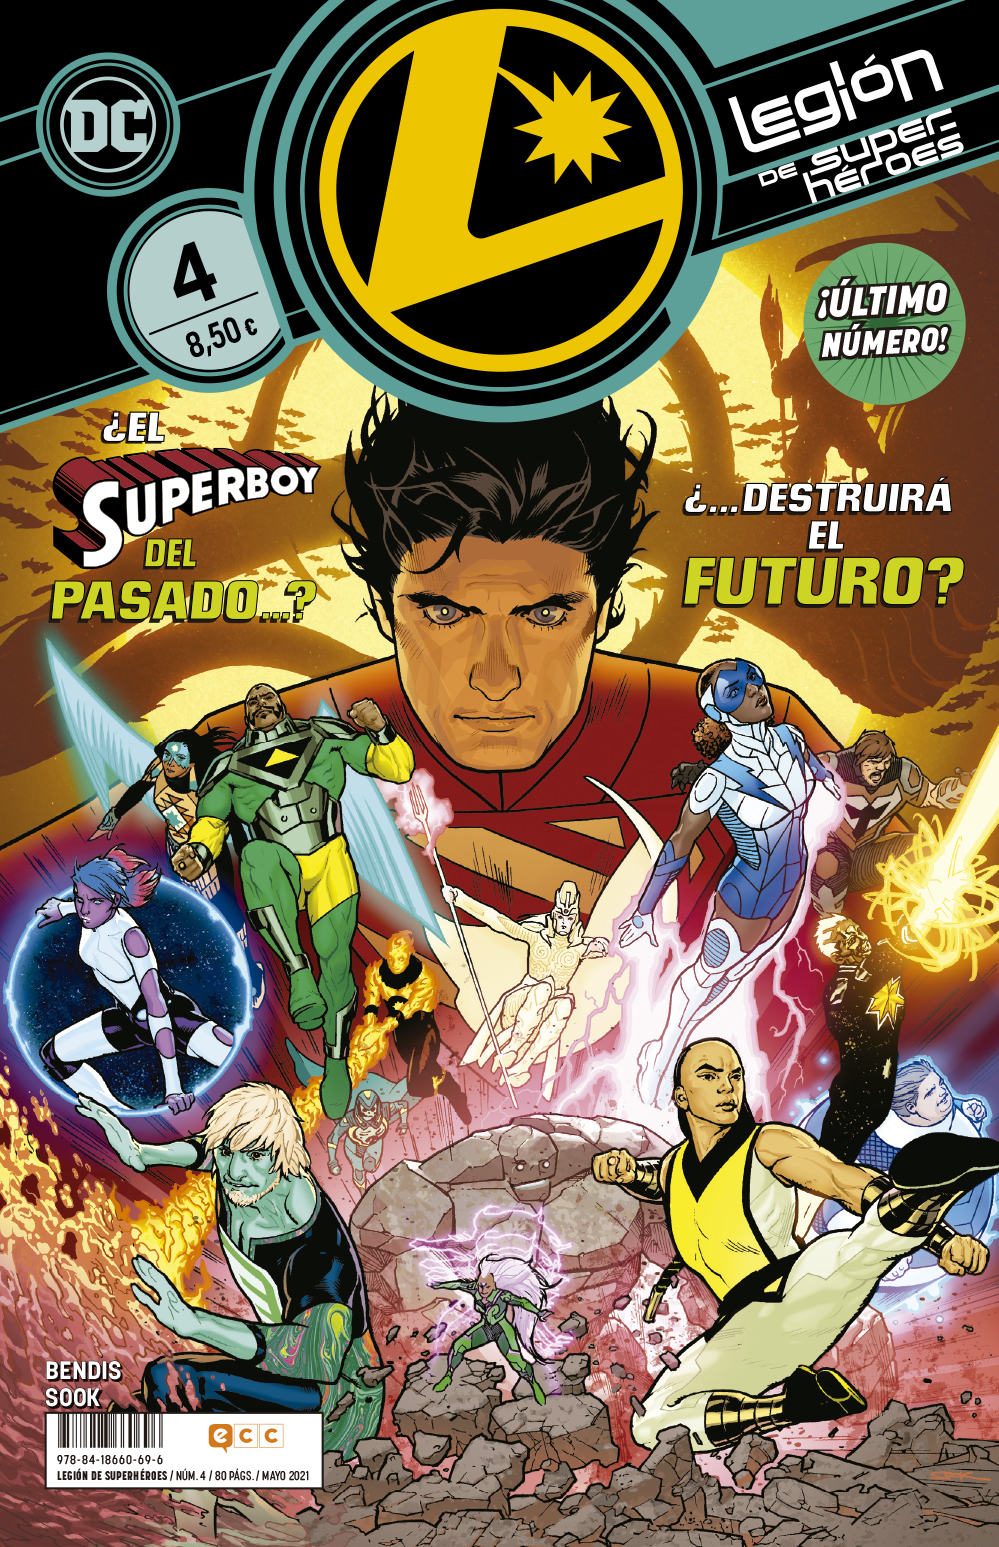 Legión de Superhéroes #04 (Último Número)